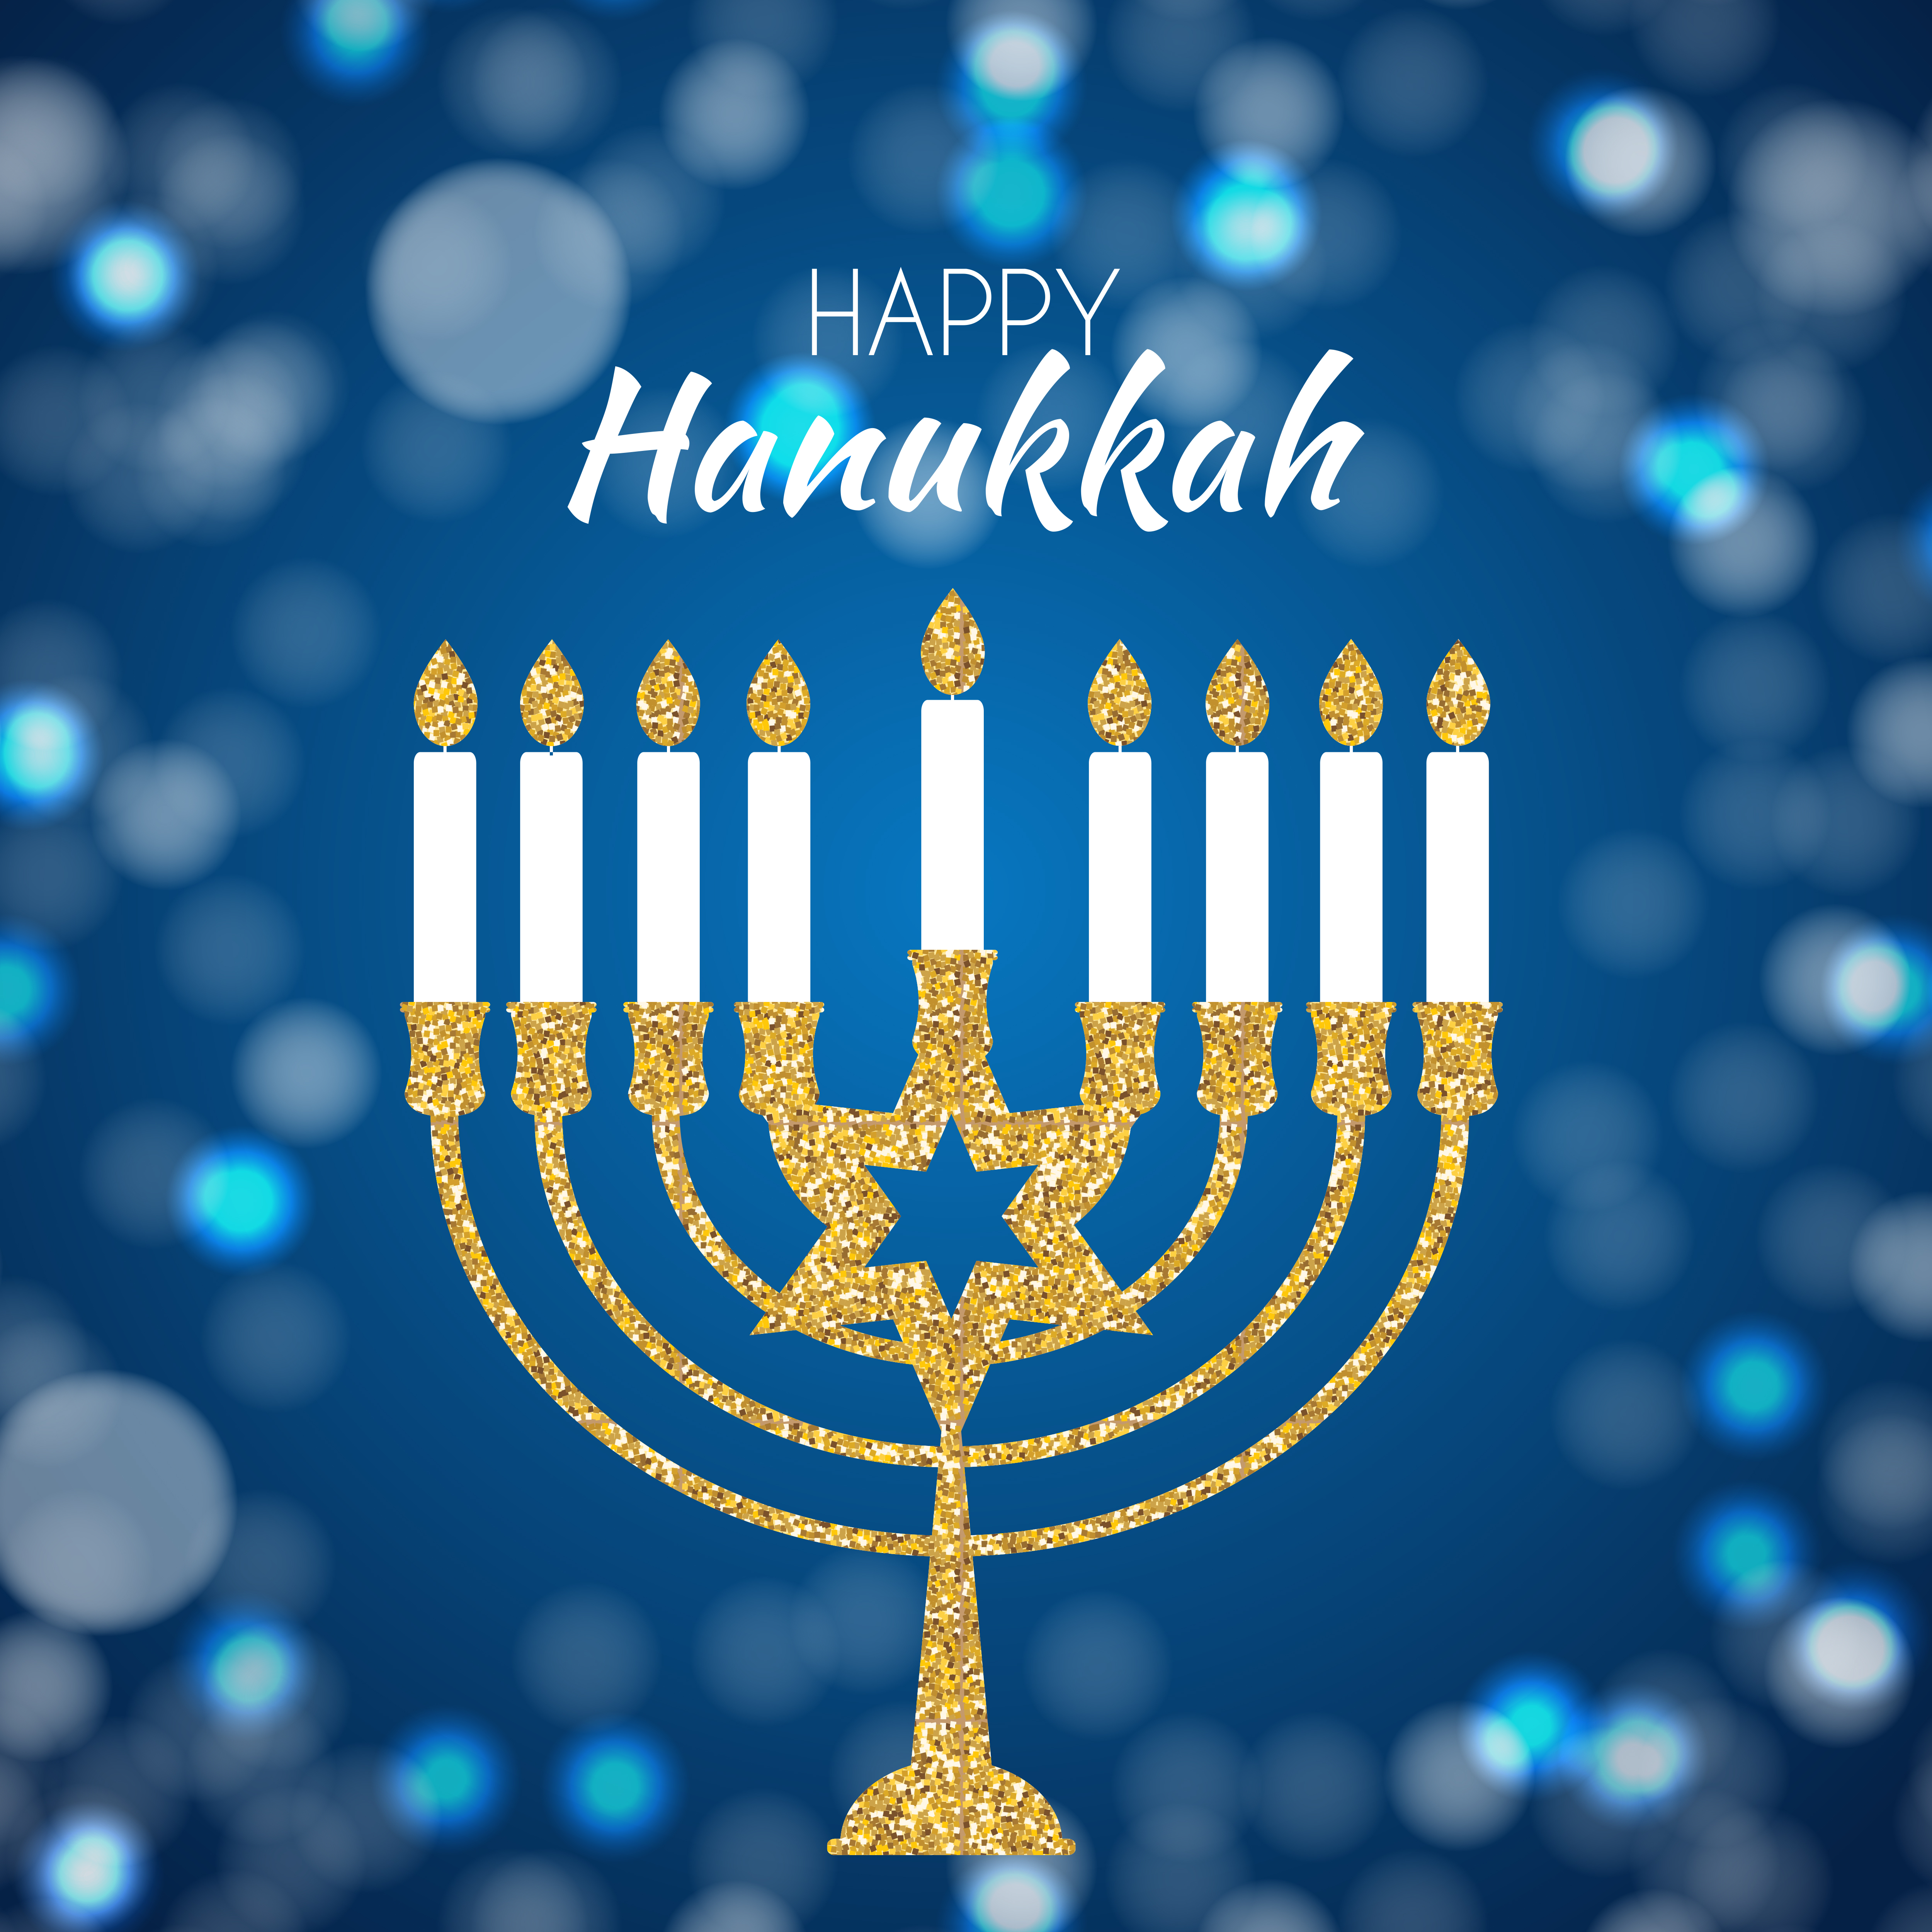 hanukkah images free download